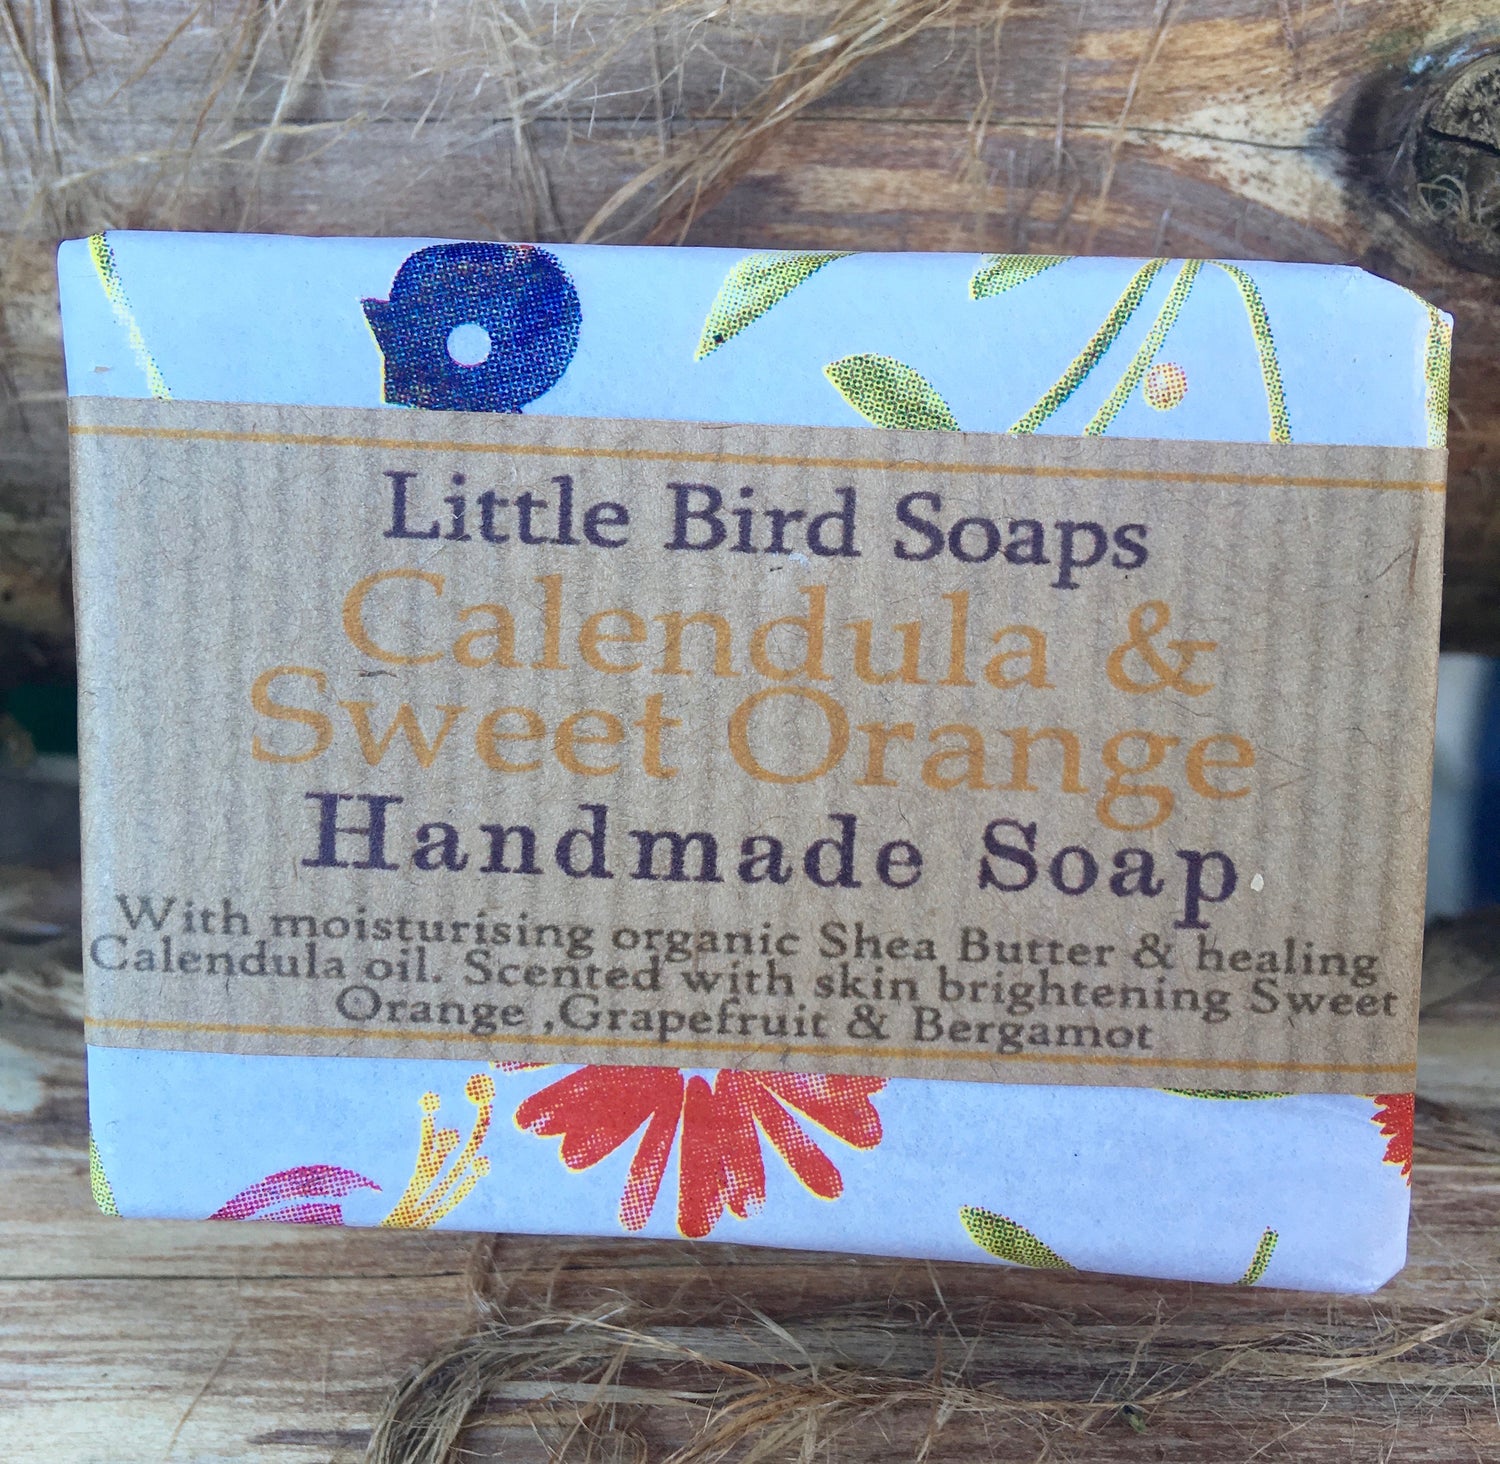 Calendula & Sweet Orange Handmade Soap